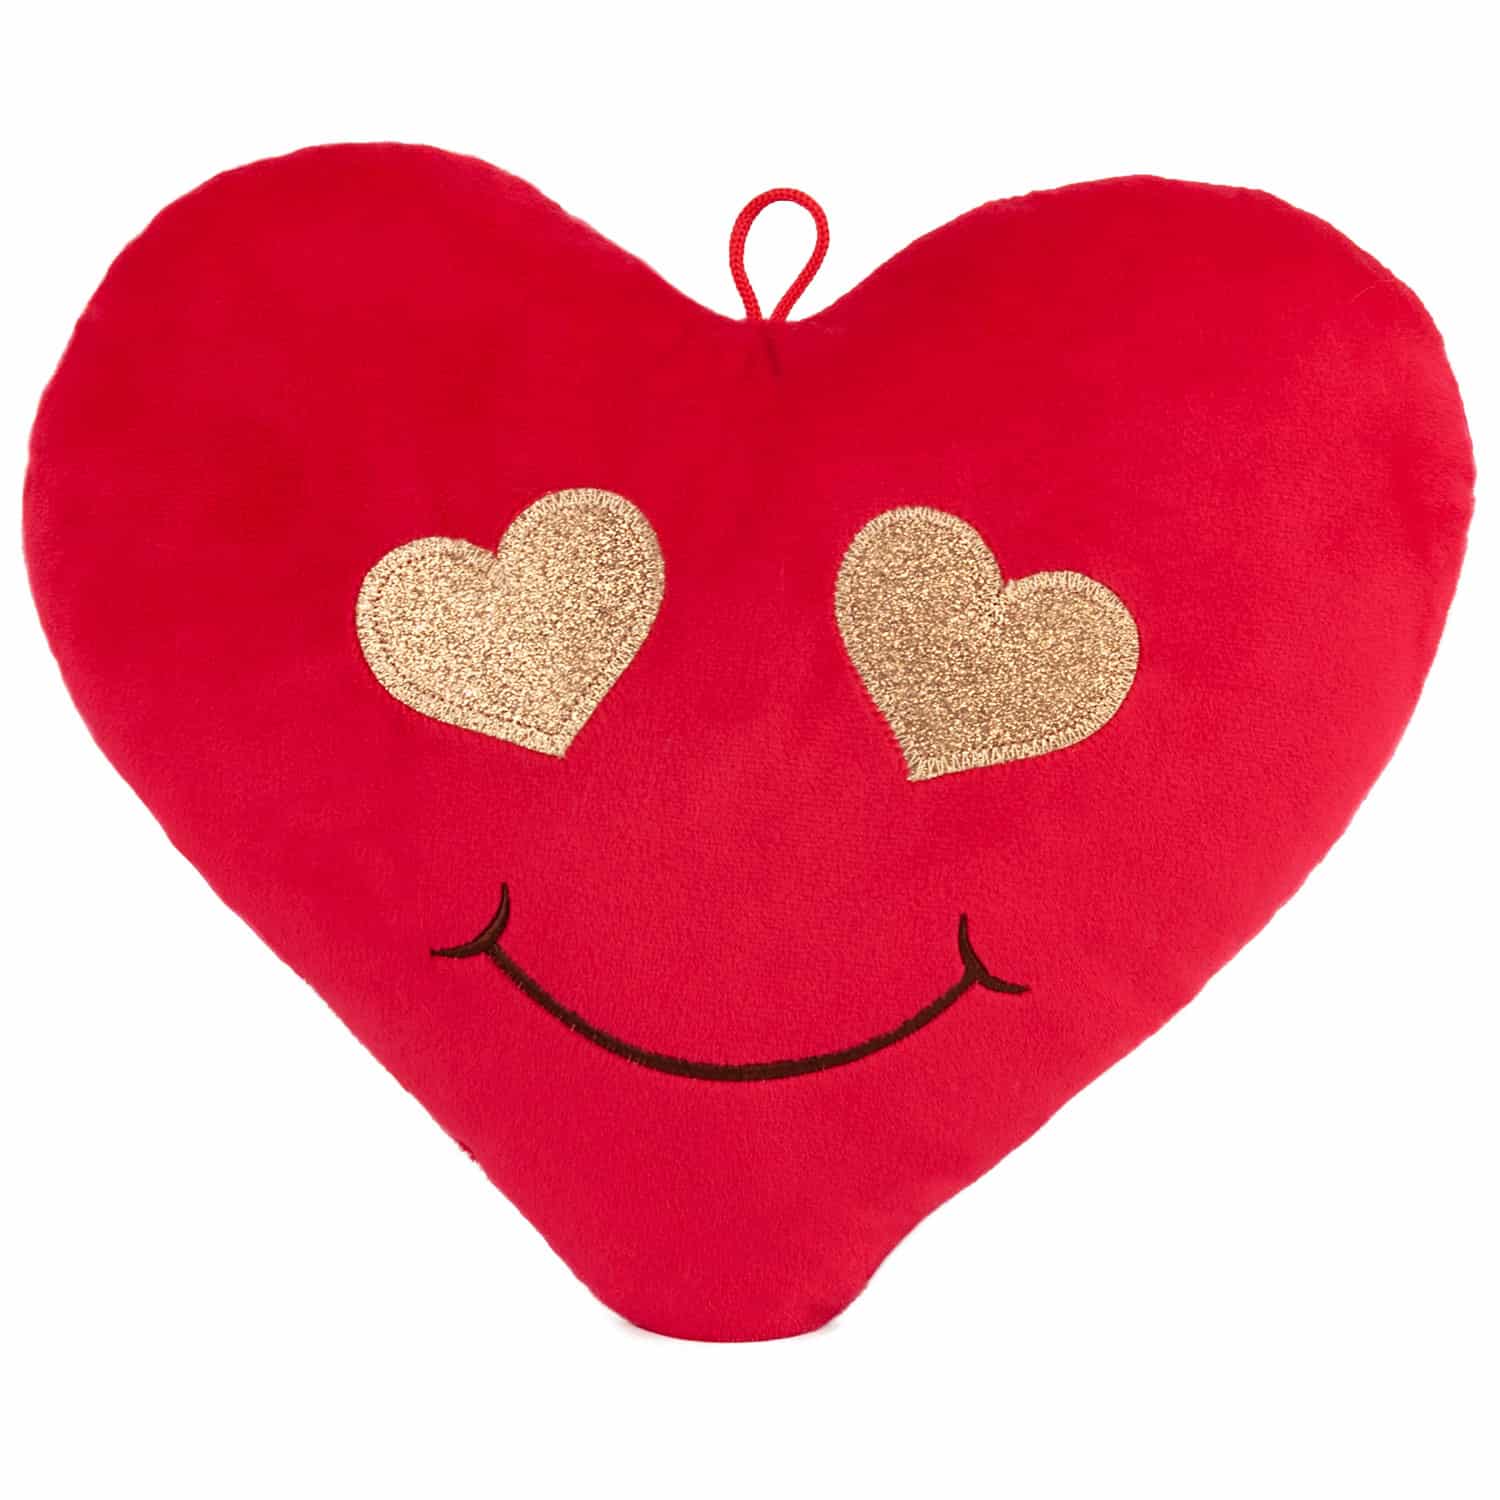 Heart emoticon - Love